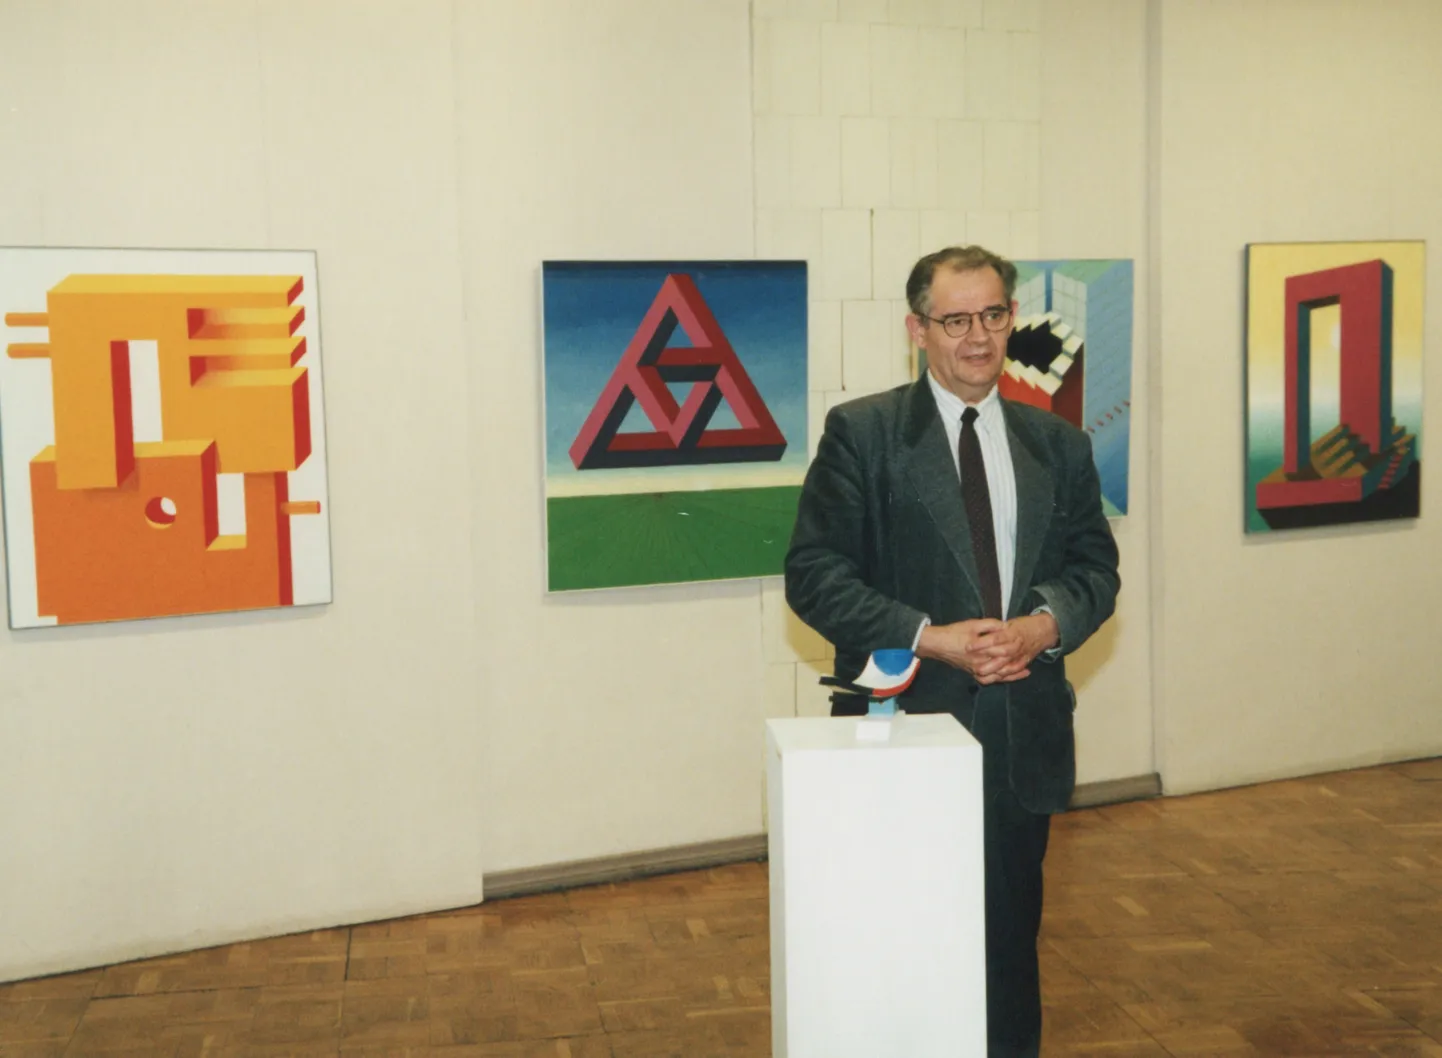 Kaljo Põllu oma näituse avamisel Tartu lastekunstikooli galeriis ehk Jakobi galeriis 1990. aastatel.